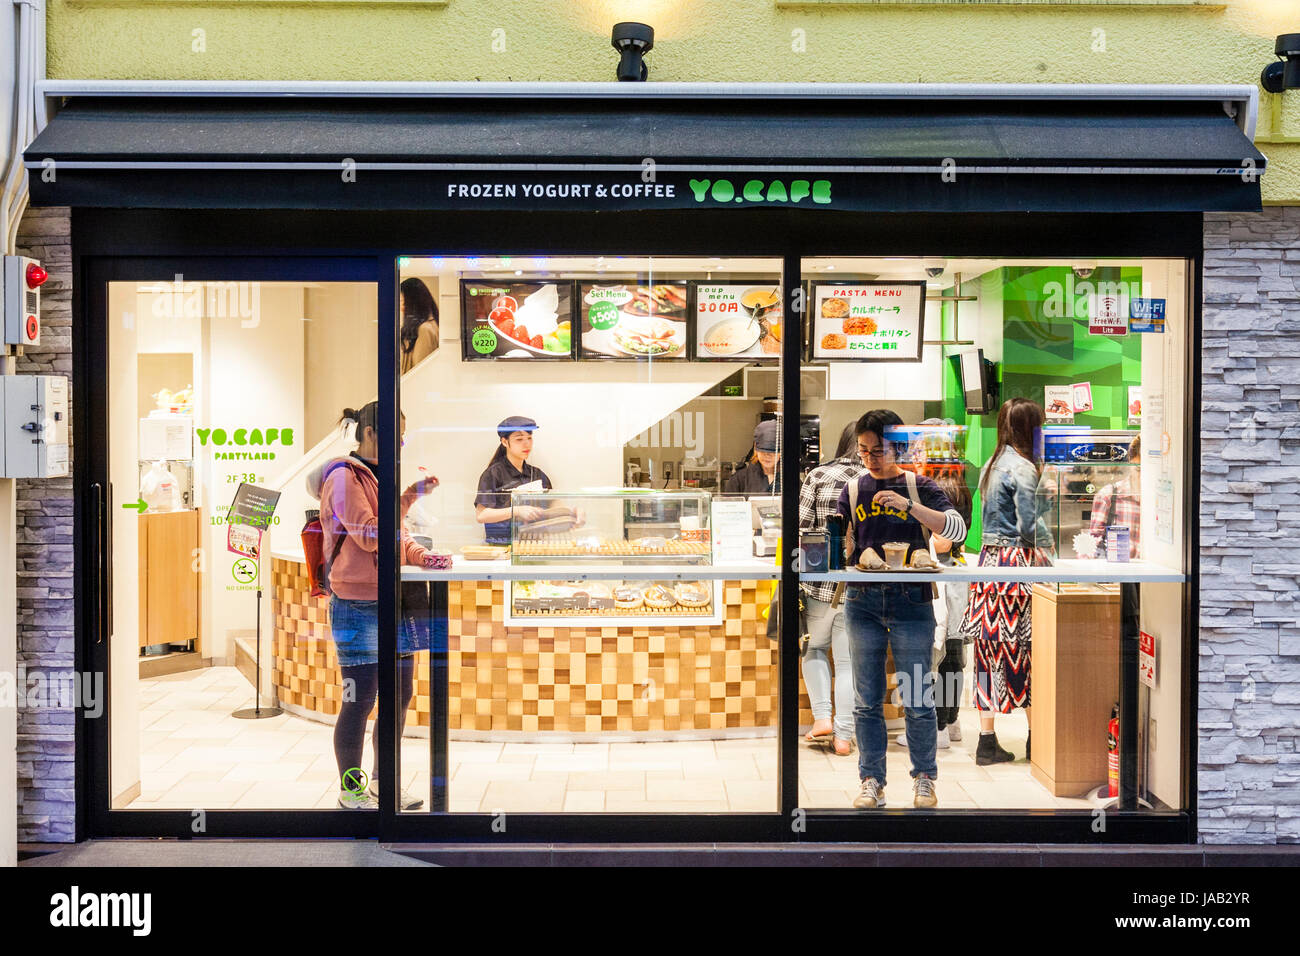 Giappone, Osaka, Shinsaibashi. Yo.Cafe, yogurt congelato e coffee shop, i clienti e il contatore principale visto attraverso il vetro anteriore. Foto Stock